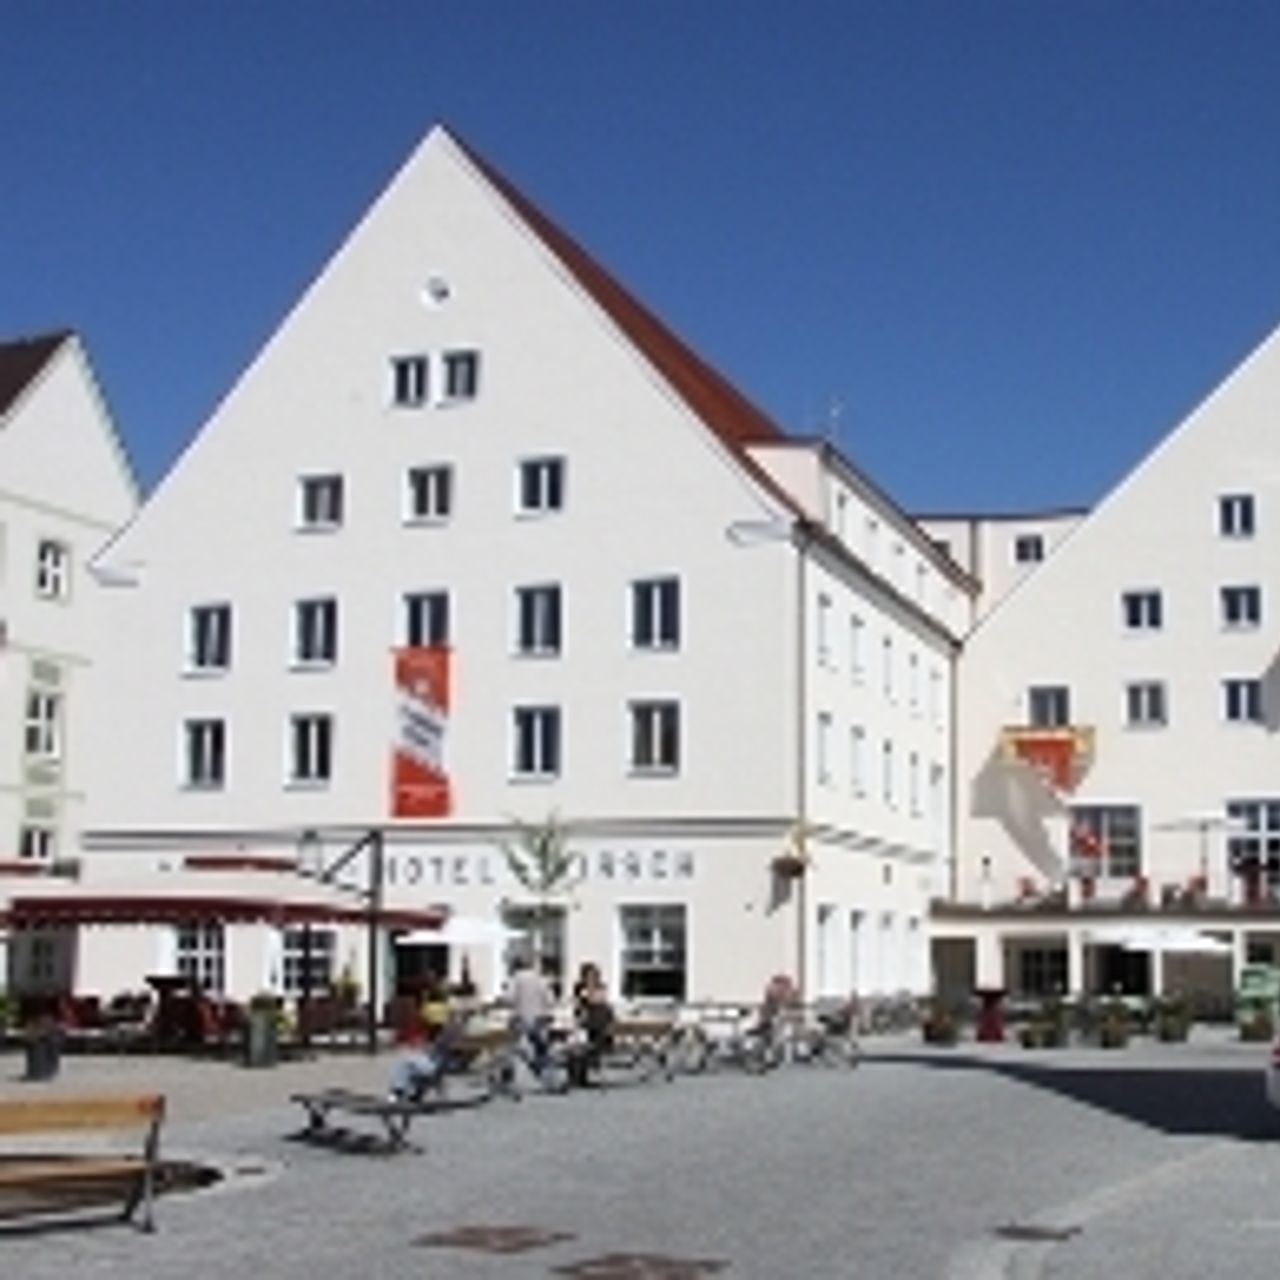 Akzent Brauerei Hotel Hirsch - Ottobeuren - Great prices at HOTEL INFO